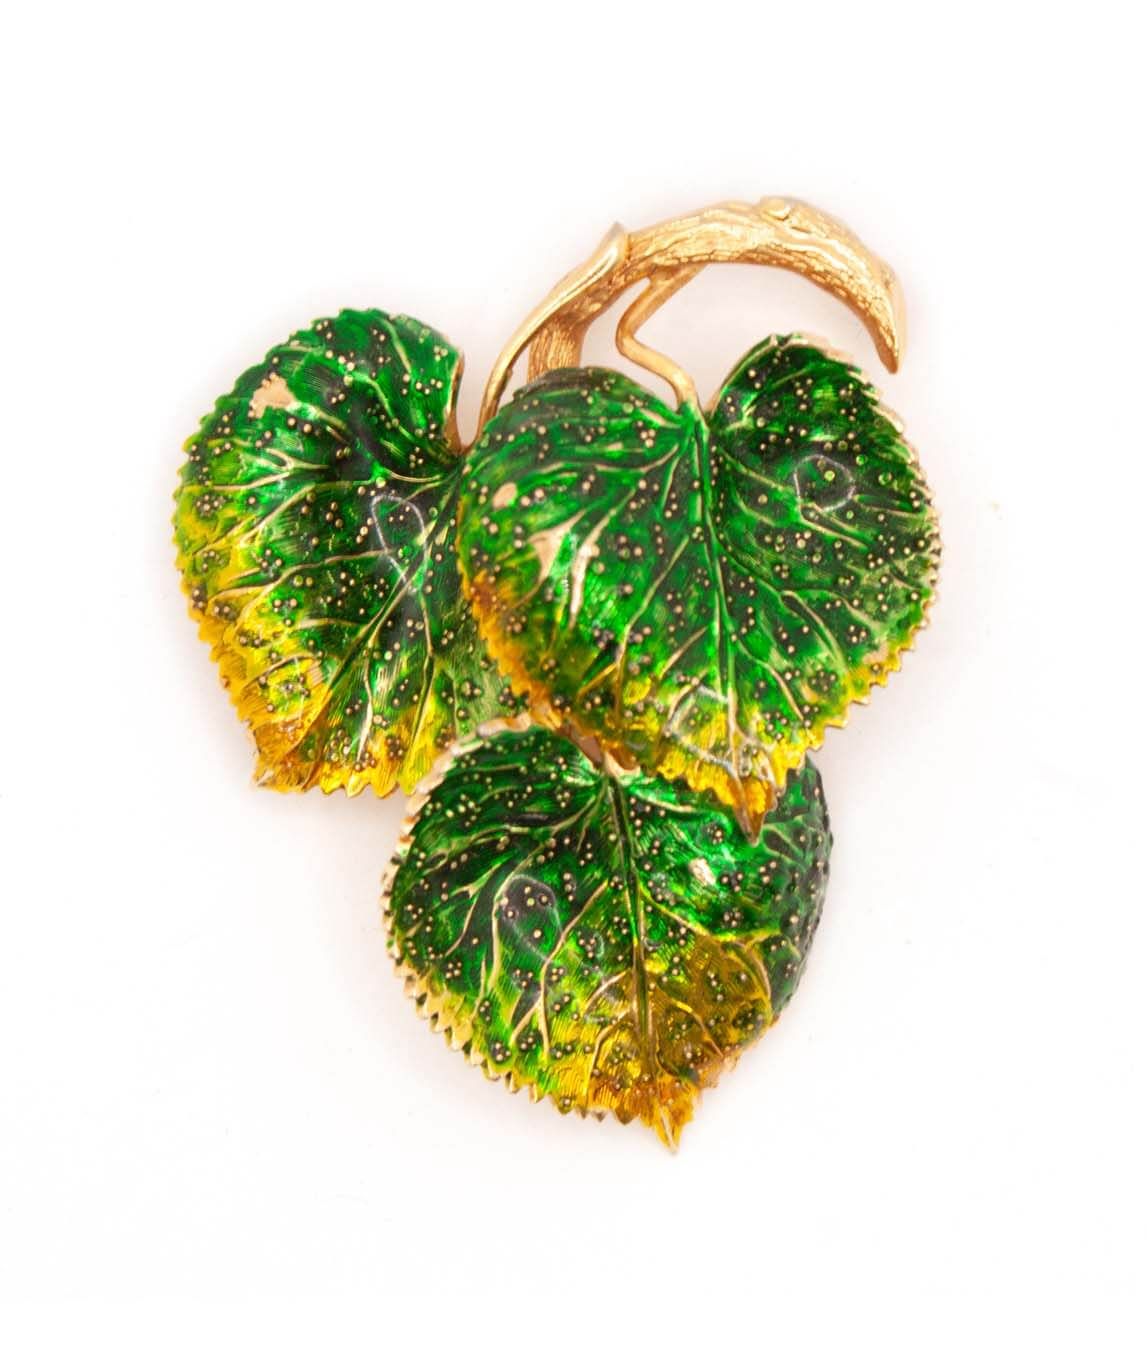 Grossé three leaf brooch green and yellow enamel